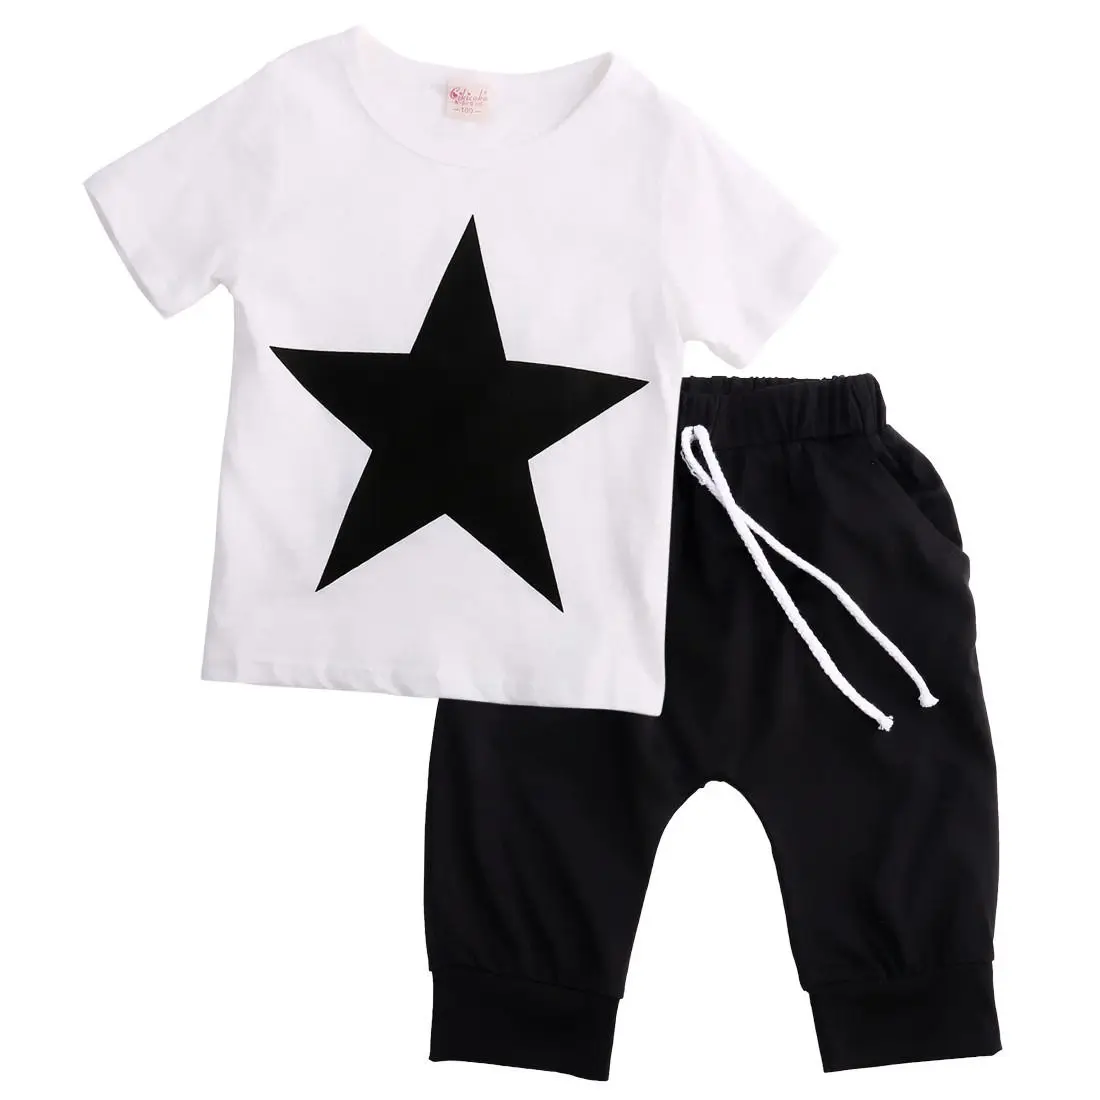 Niño Niños Ropa de Niños del Bebé Star T-shirt Tops, Pantalones Harem, 2pcs Trajes Conjunto de Ropa 2-7Y 2